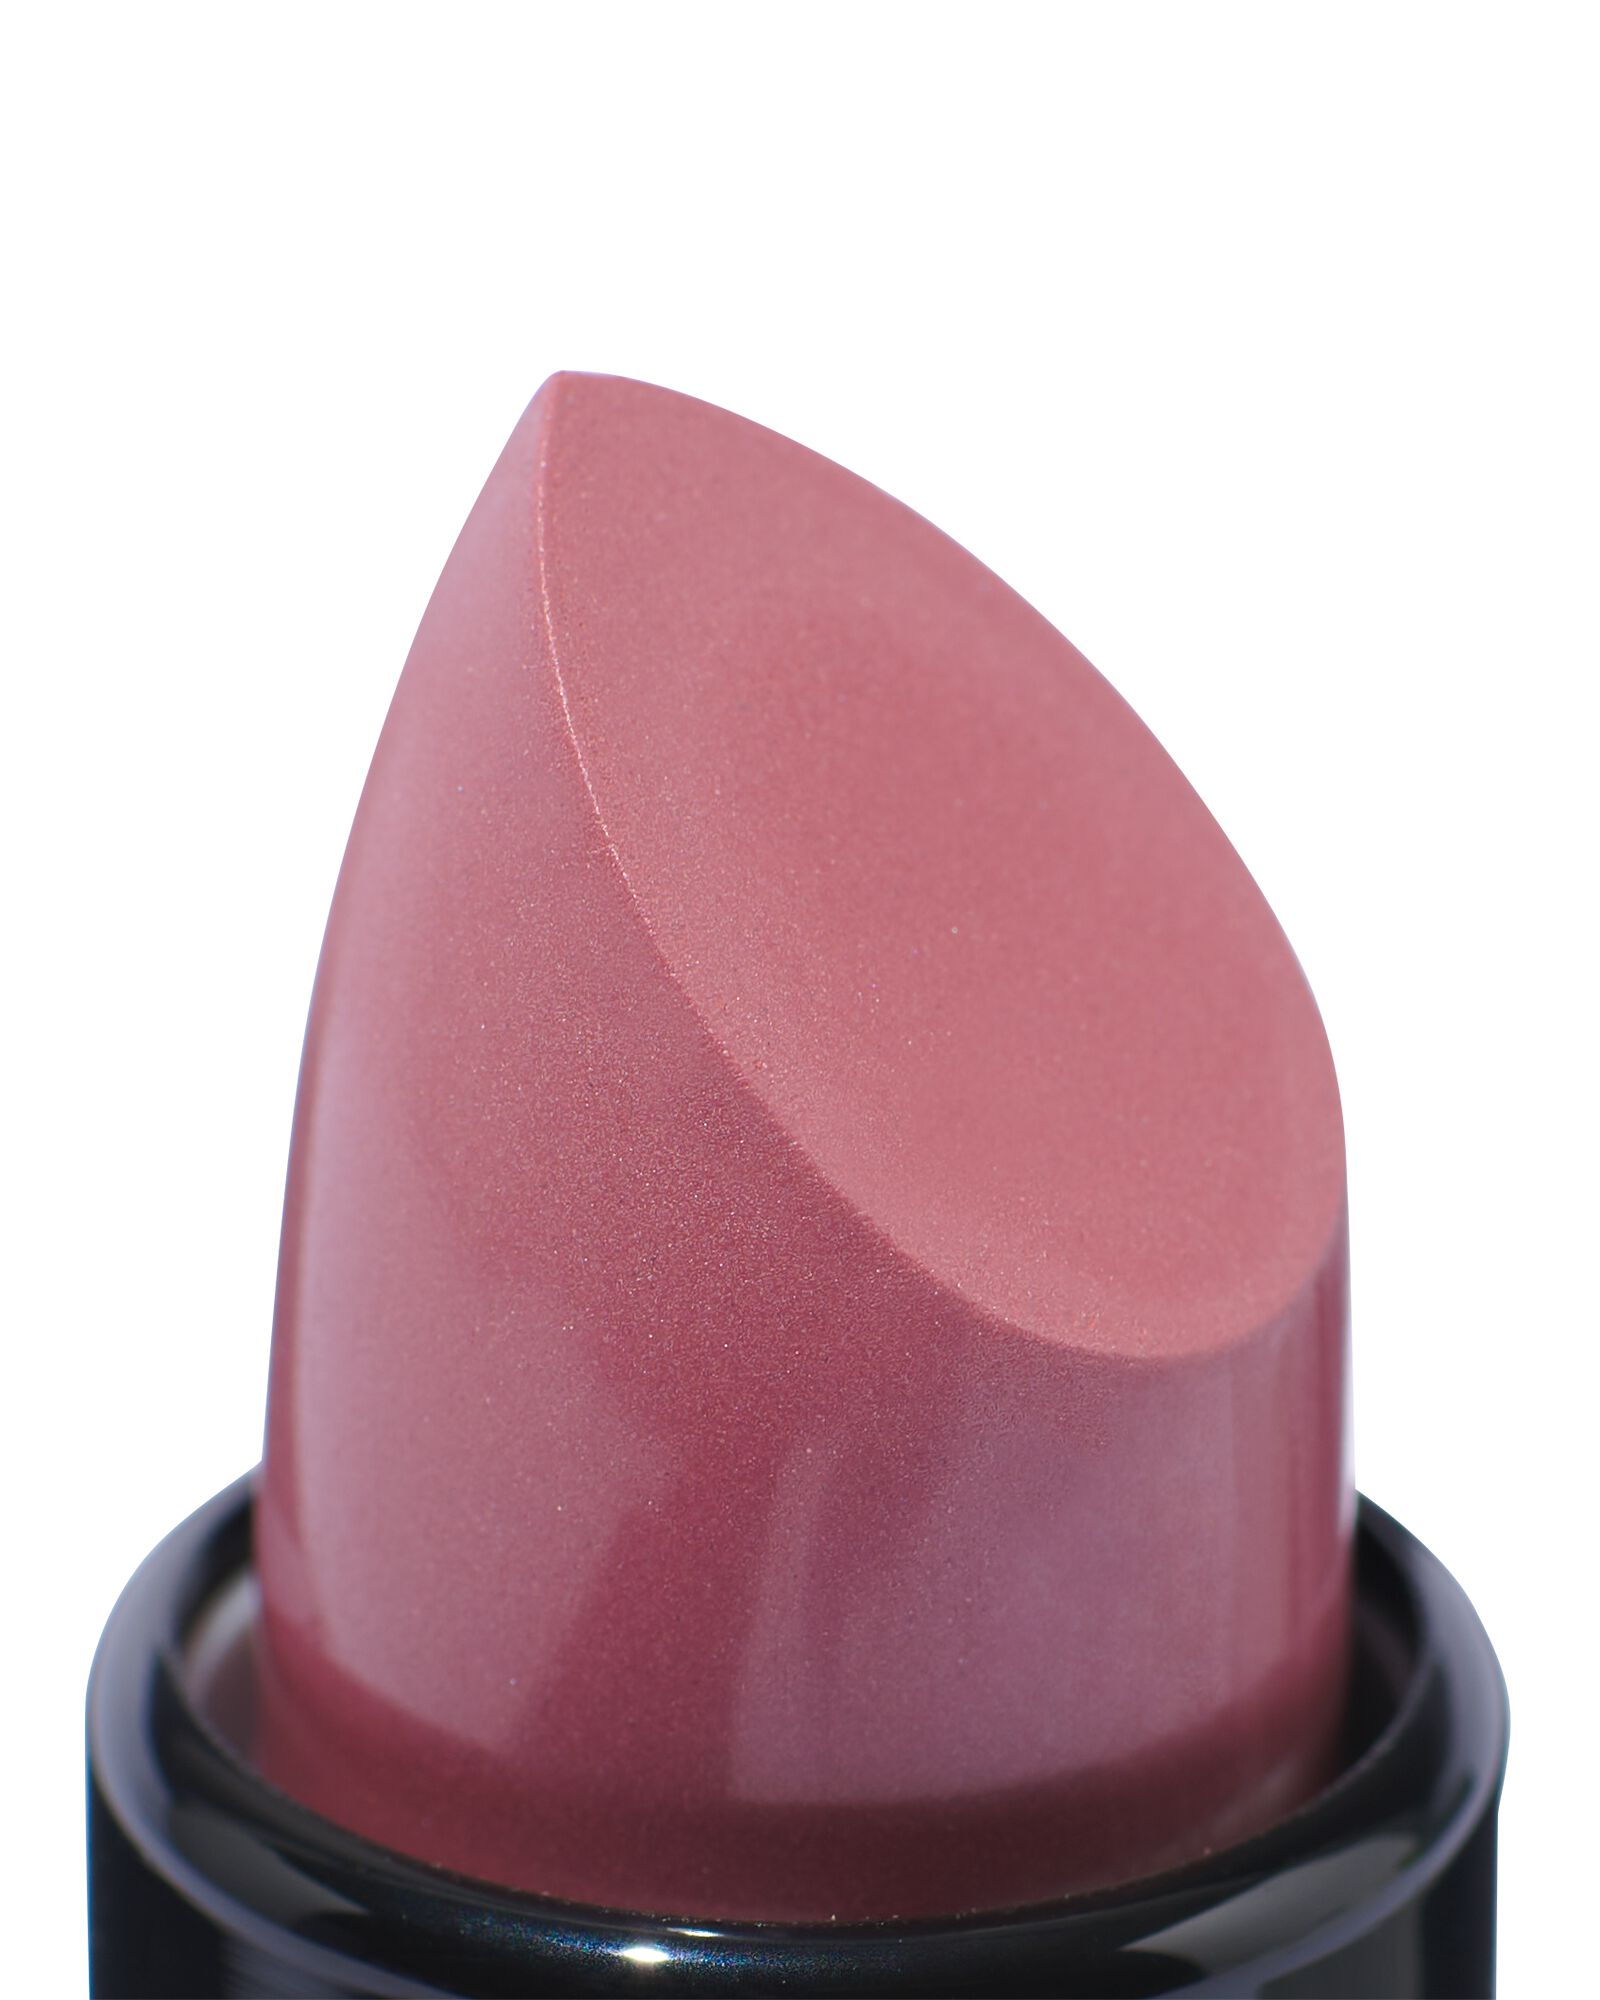 HEMA Moisturising Lipstick 910 Blushed Rose - Creamy Finish (donkerroze)